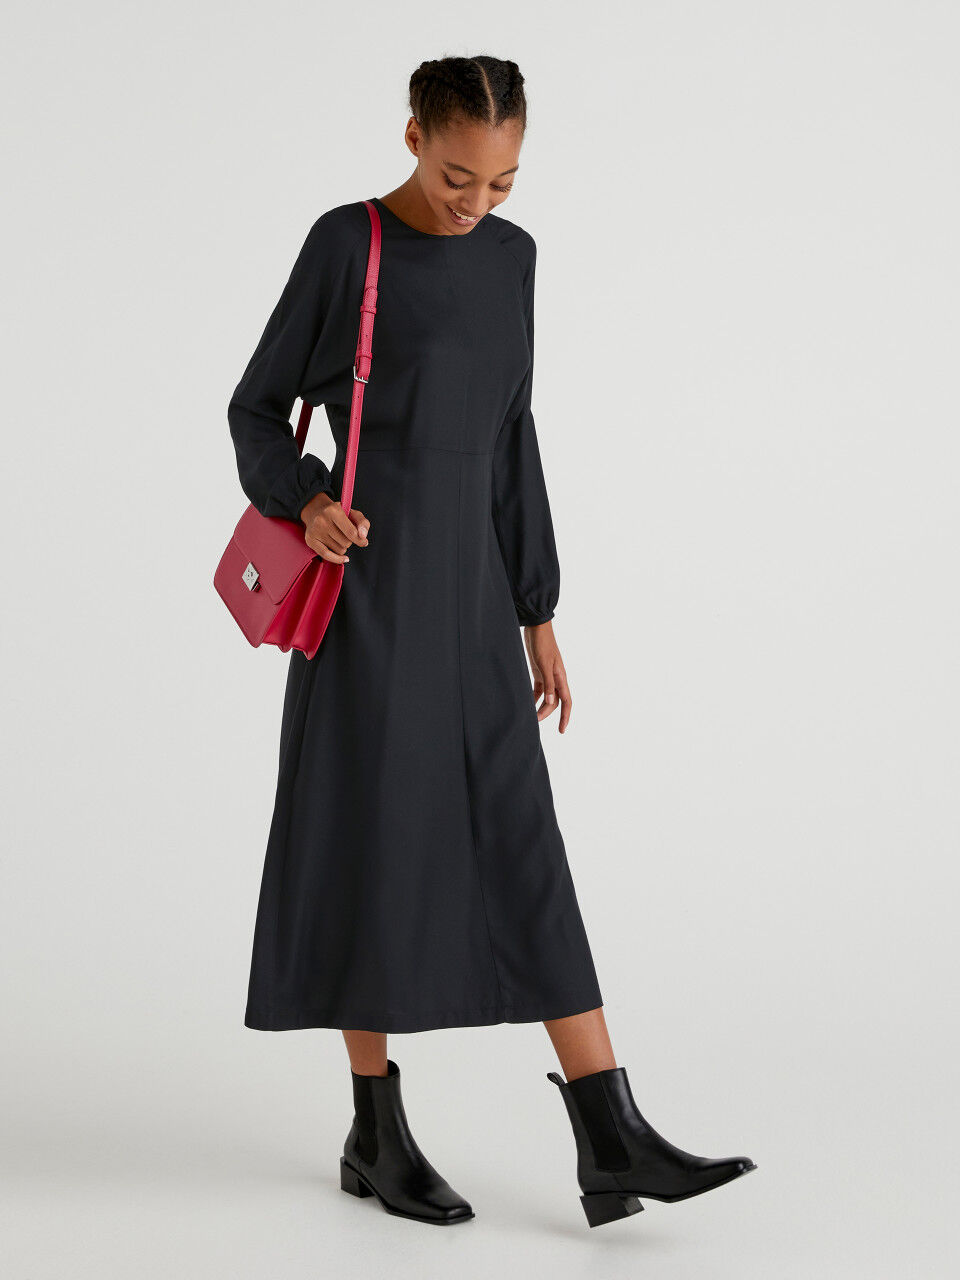 Robe En Gaze 100% Coton United Colors of Benetton Femme Vêtements Robes Gaze 